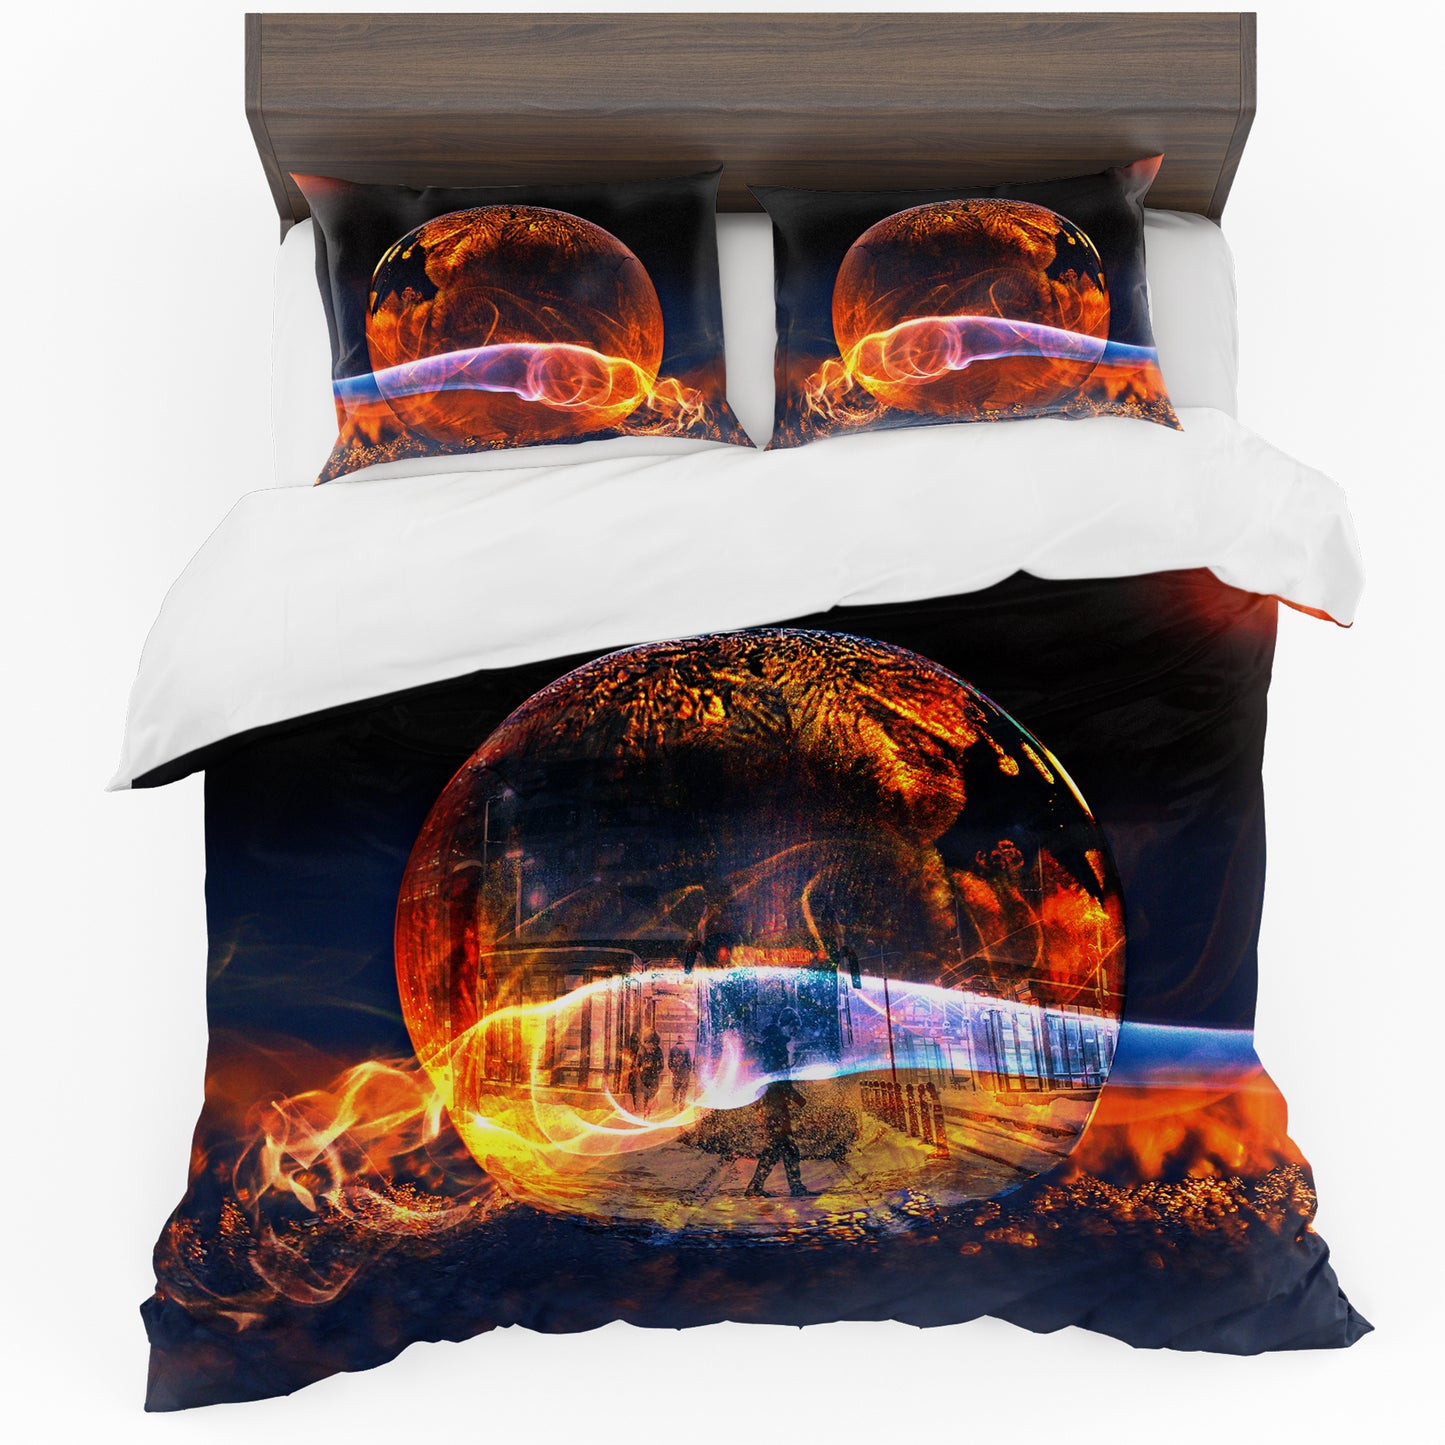 Fire Snow Globe Duvet Cover Set